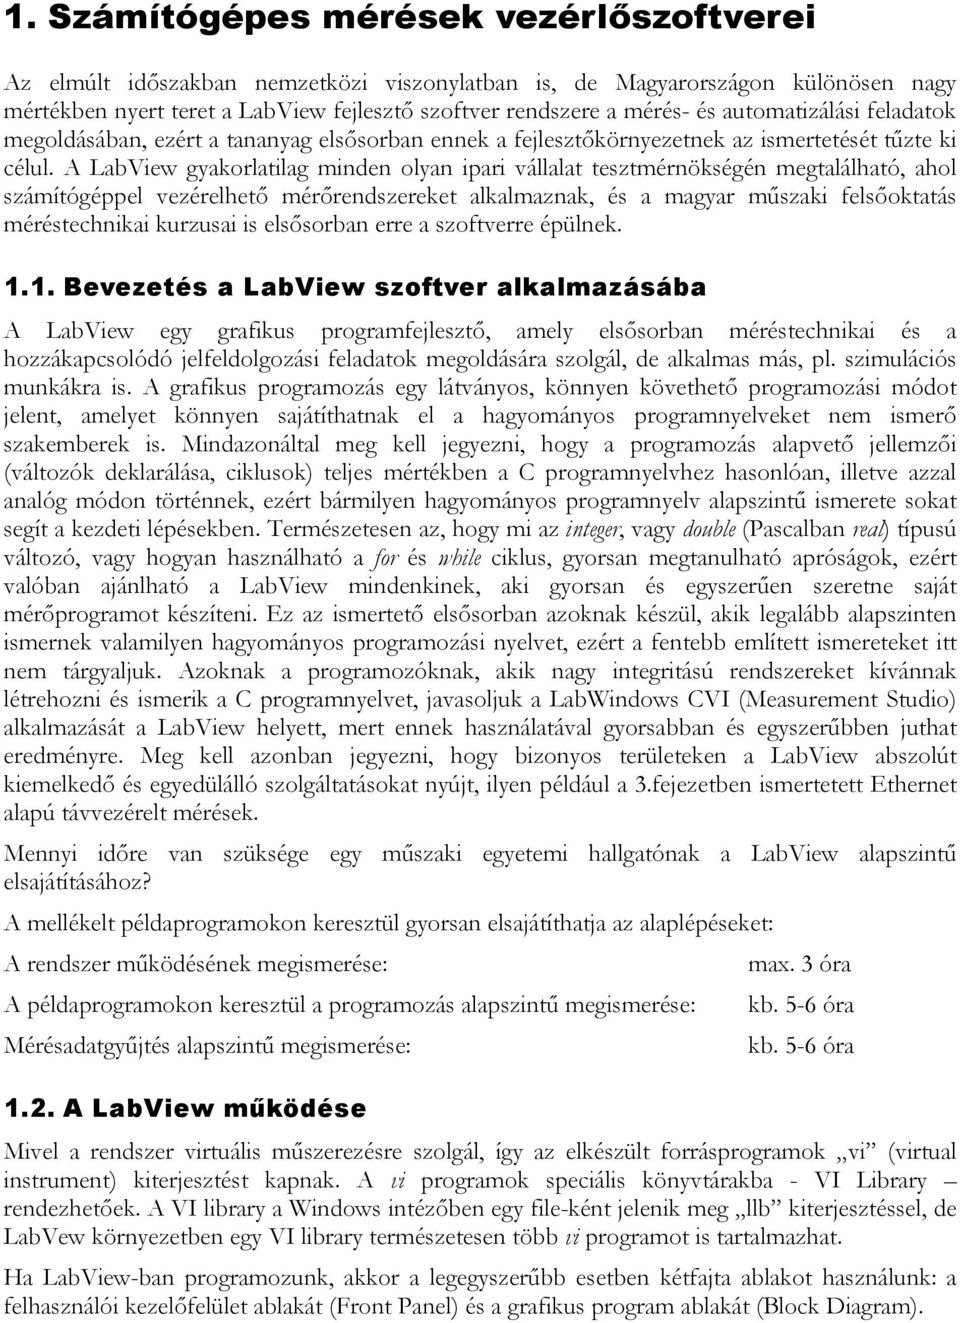 A LabView gyakorlatilag minden olyan ipari vállalat tesztmérnökségén megtalálható, ahol számítógéppel vezérelhető mérőrendszereket alkalmaznak, és a magyar műszaki felsőoktatás méréstechnikai